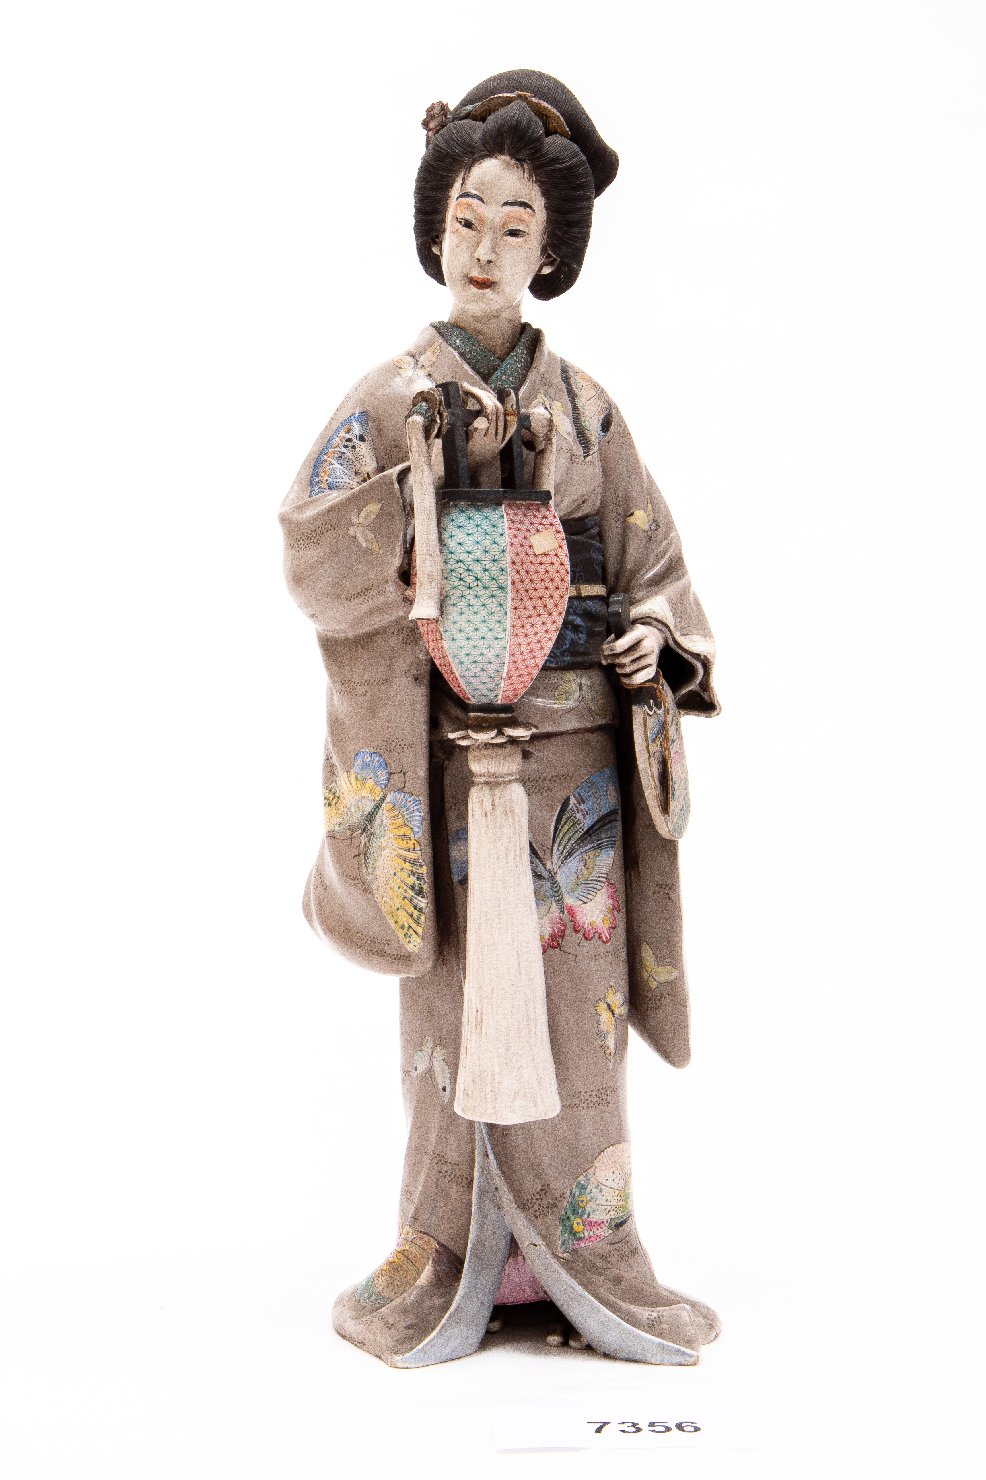 Fanciulla in kimono (statua) di Goraku 娯樂 (attribuito) - manifattura giapponese (XIX) <br>Condizioni d'uso: <a class='link-esterno' href='https://docs.italia.it/italia/icdp/icdp-pnd-circolazione-riuso-docs/it/v1.0-giugno-2022/testo-etichetta-BCS.html' target='_bcs'>Beni Culturali Standard (BCS)</a>